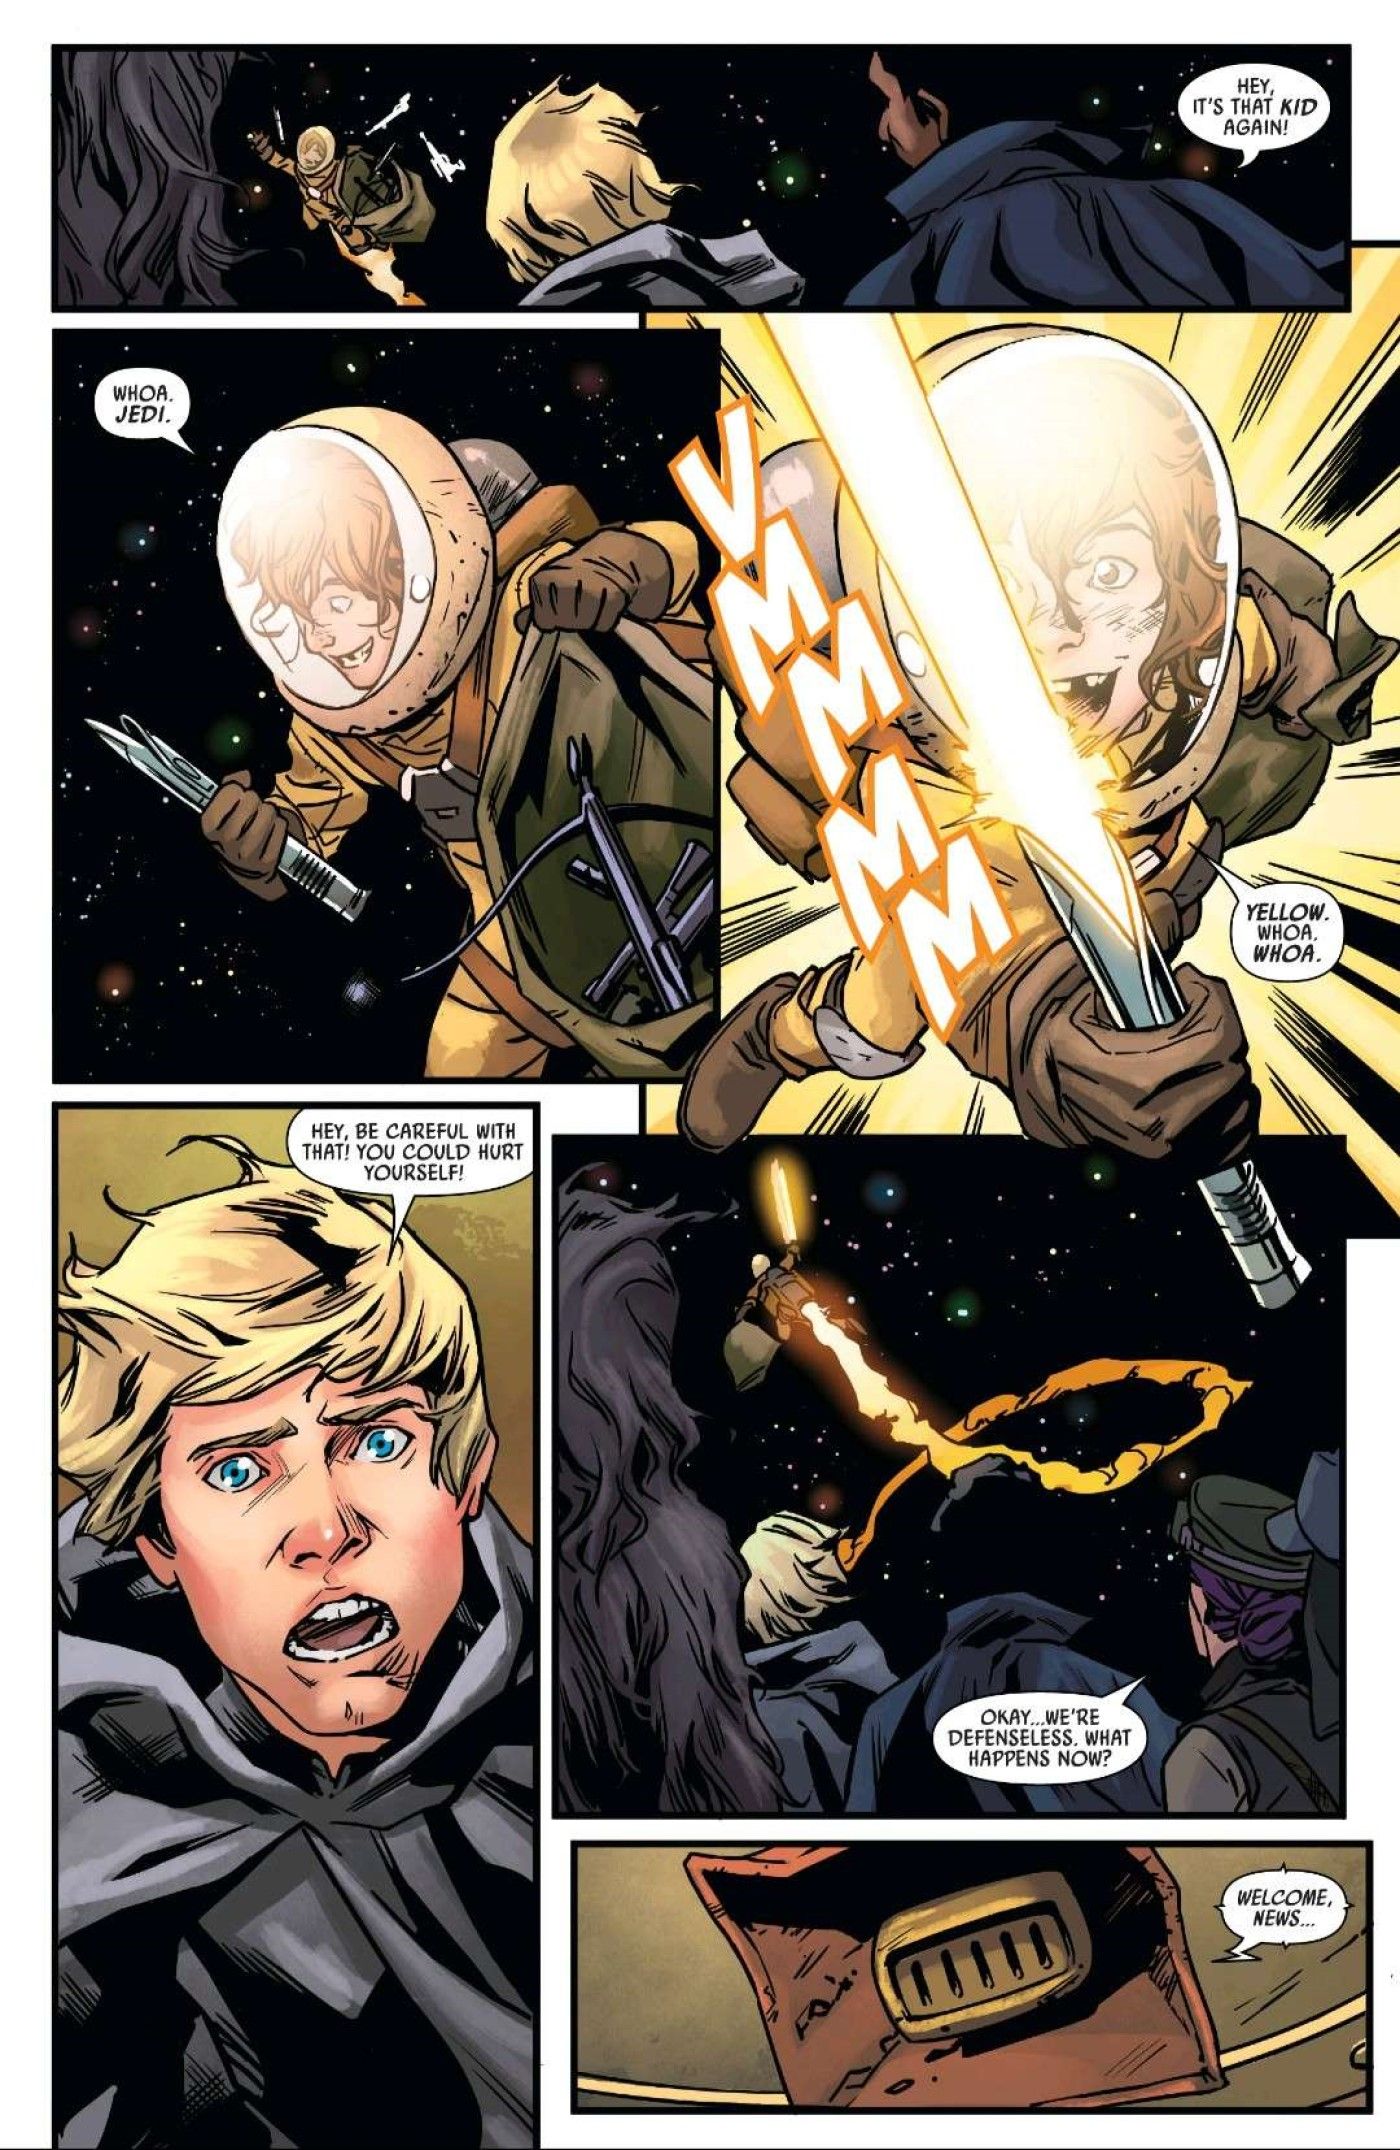 Luke Skywalker's yellow-bladed lightsaber is stolen in Star Wars #30.